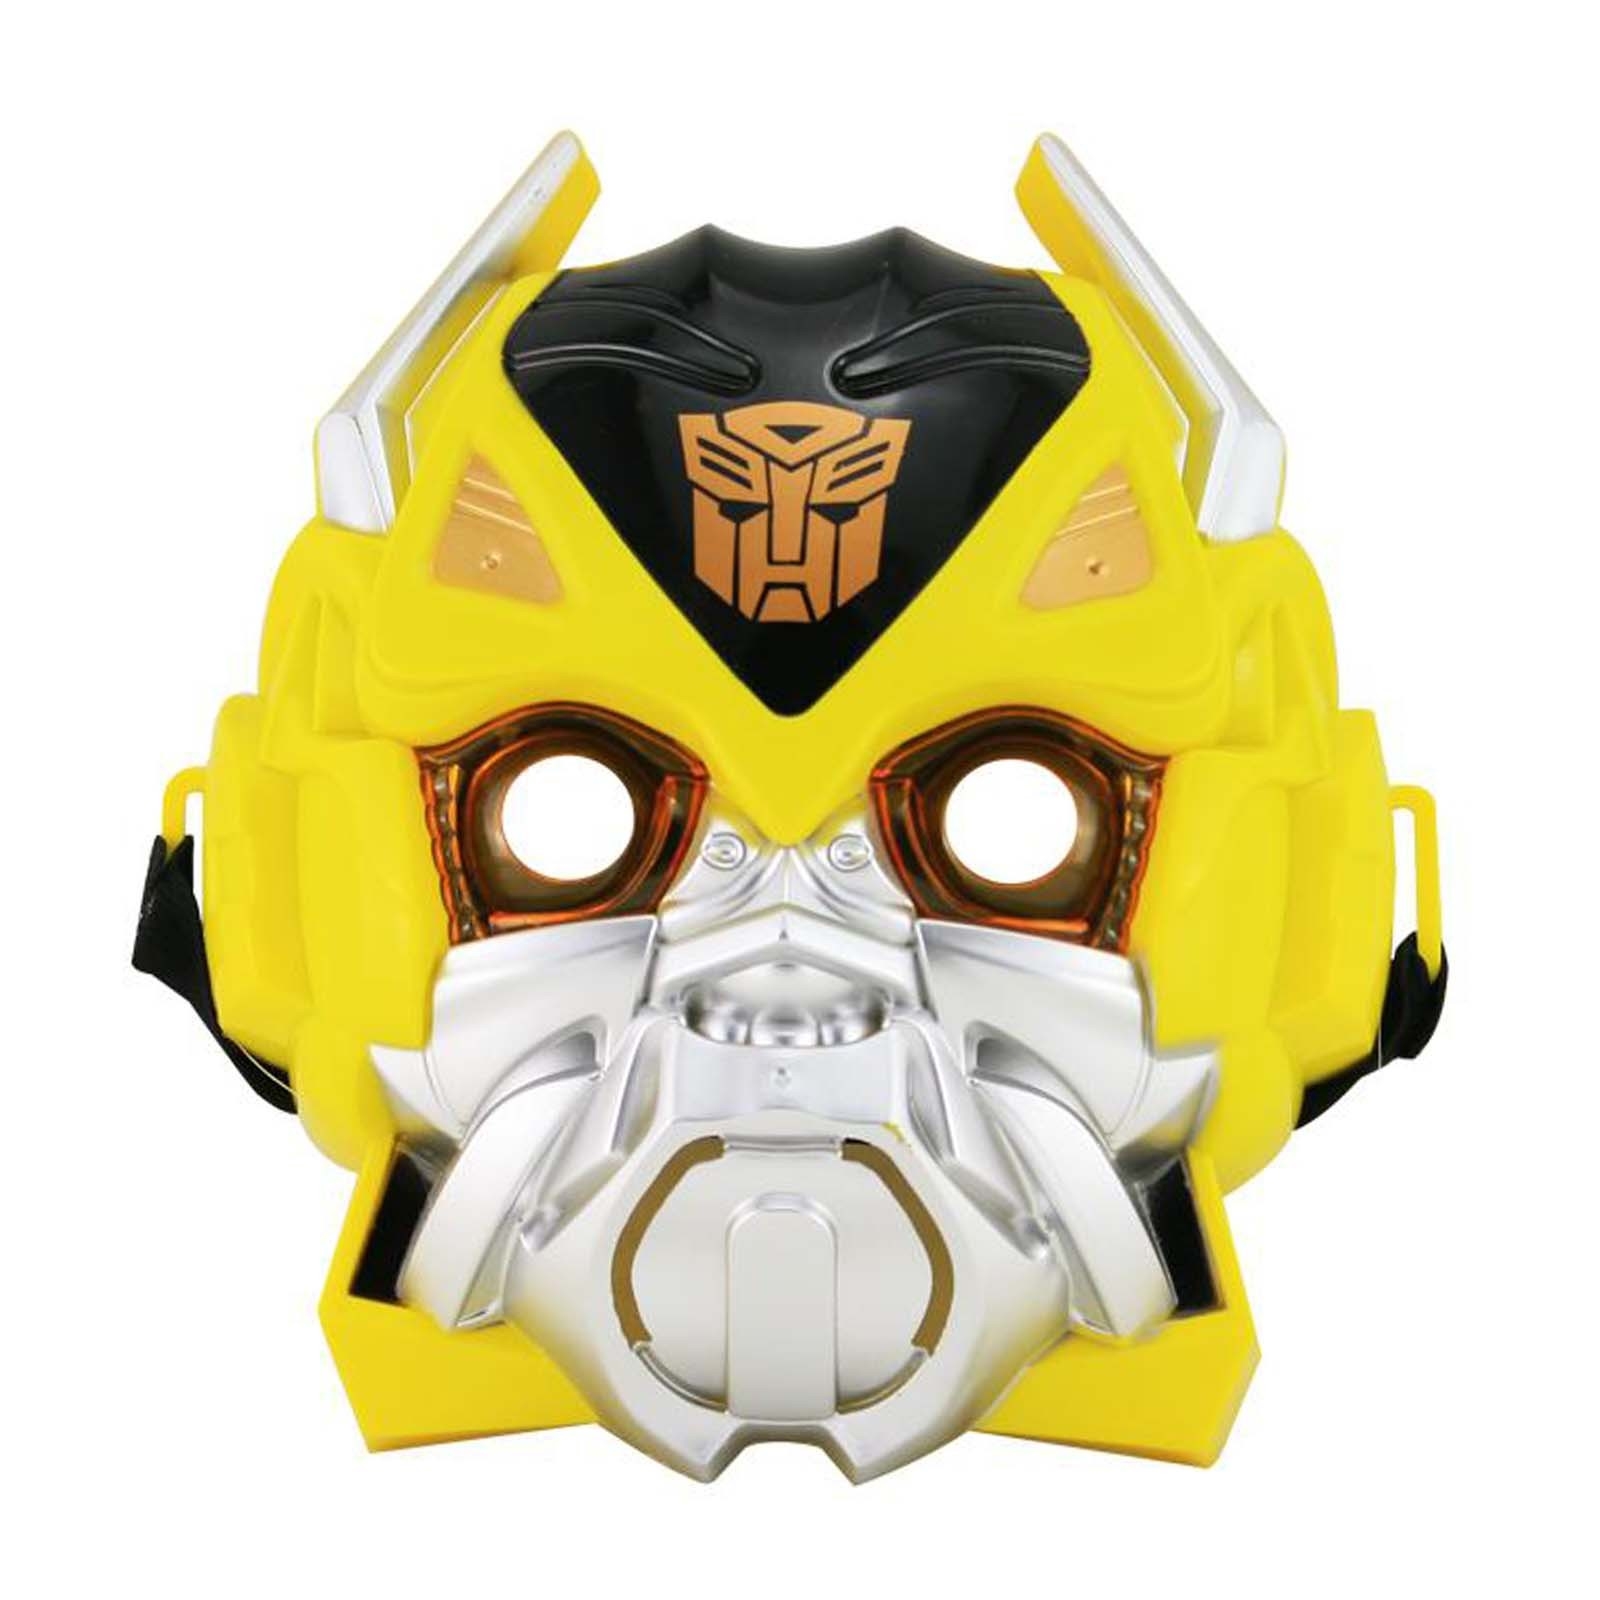 Bumblebee Transformer Face Mask Helmet Hd.